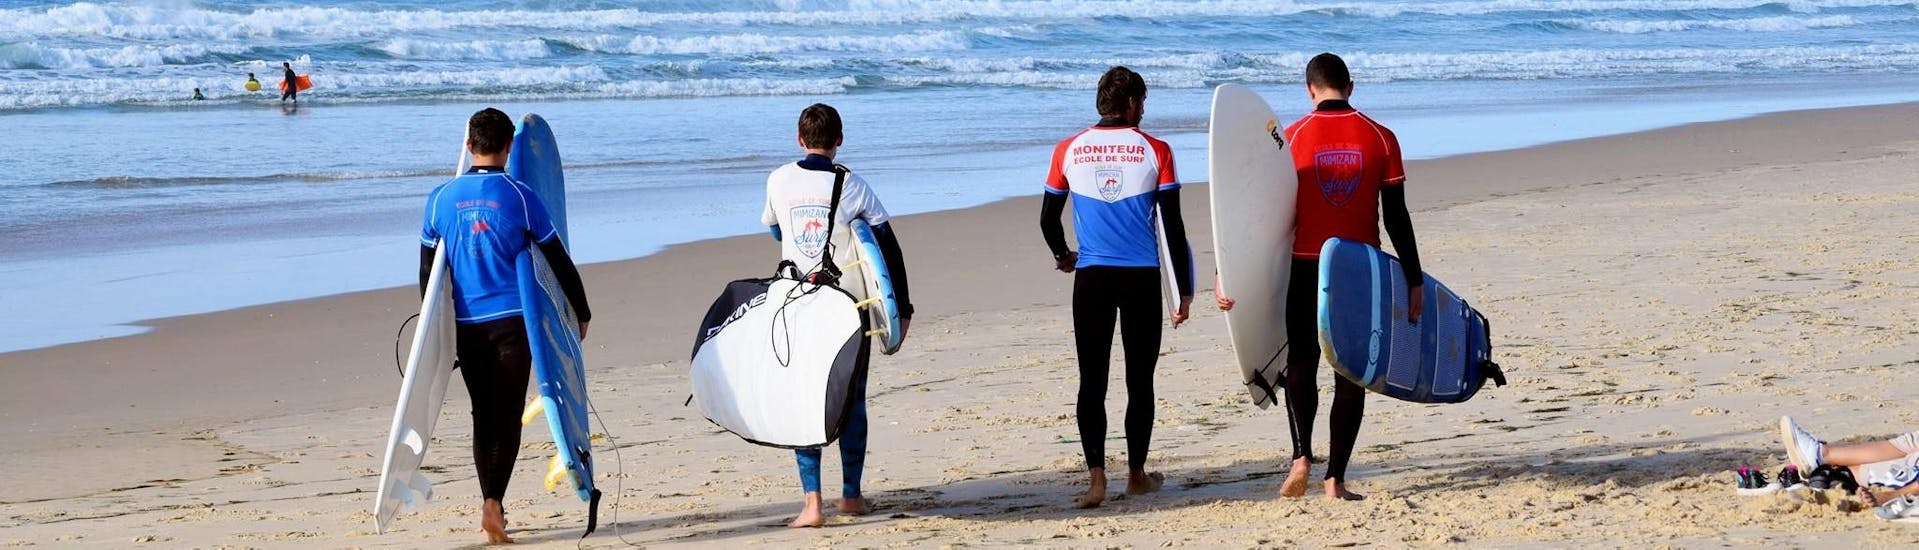 Mensen op het strand van Mimizan tijdens hun privé surflessen bij Mimizan Surf Academy.